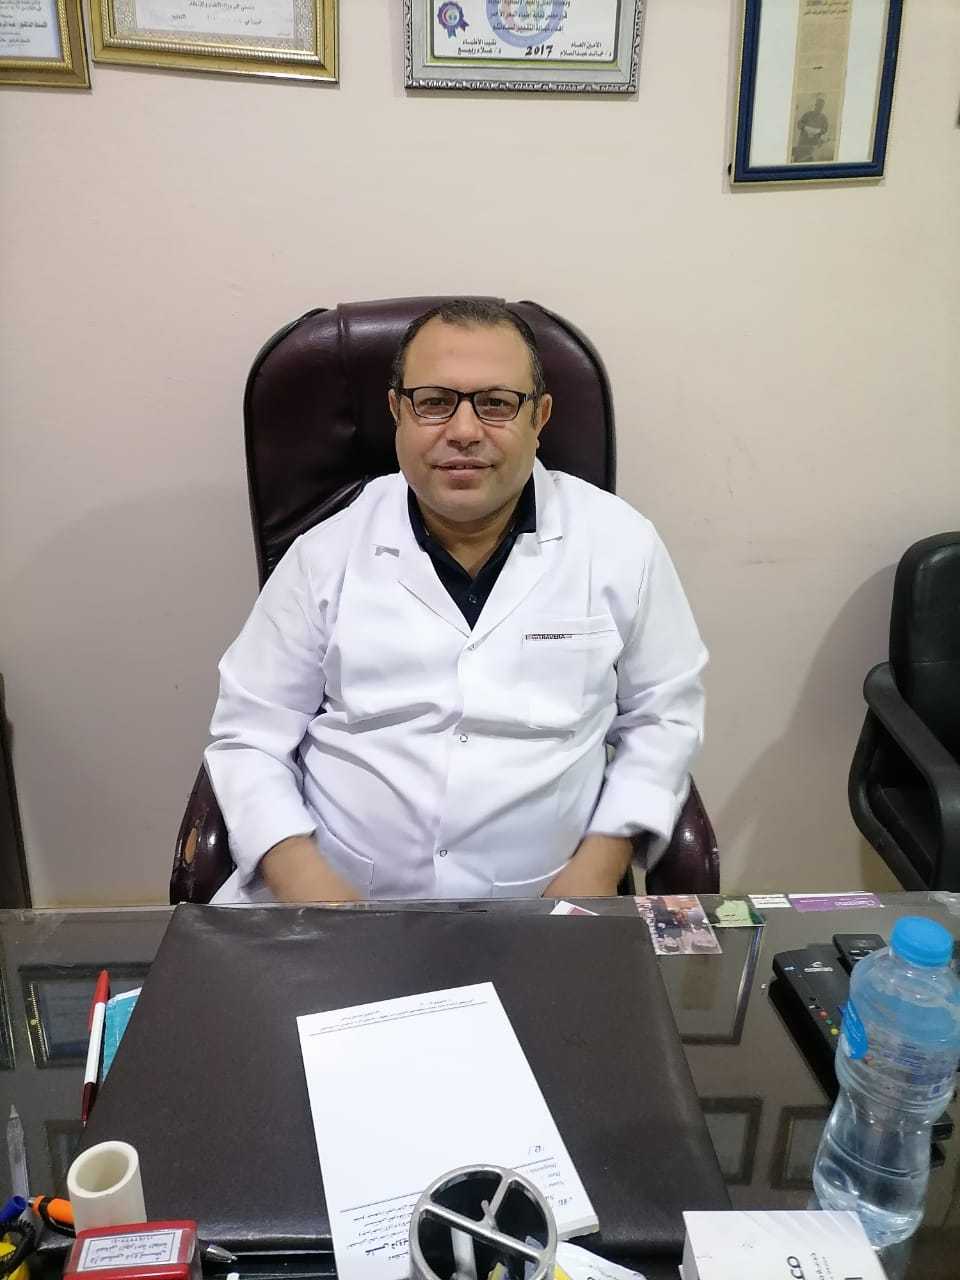 Dr. Ali Darwish